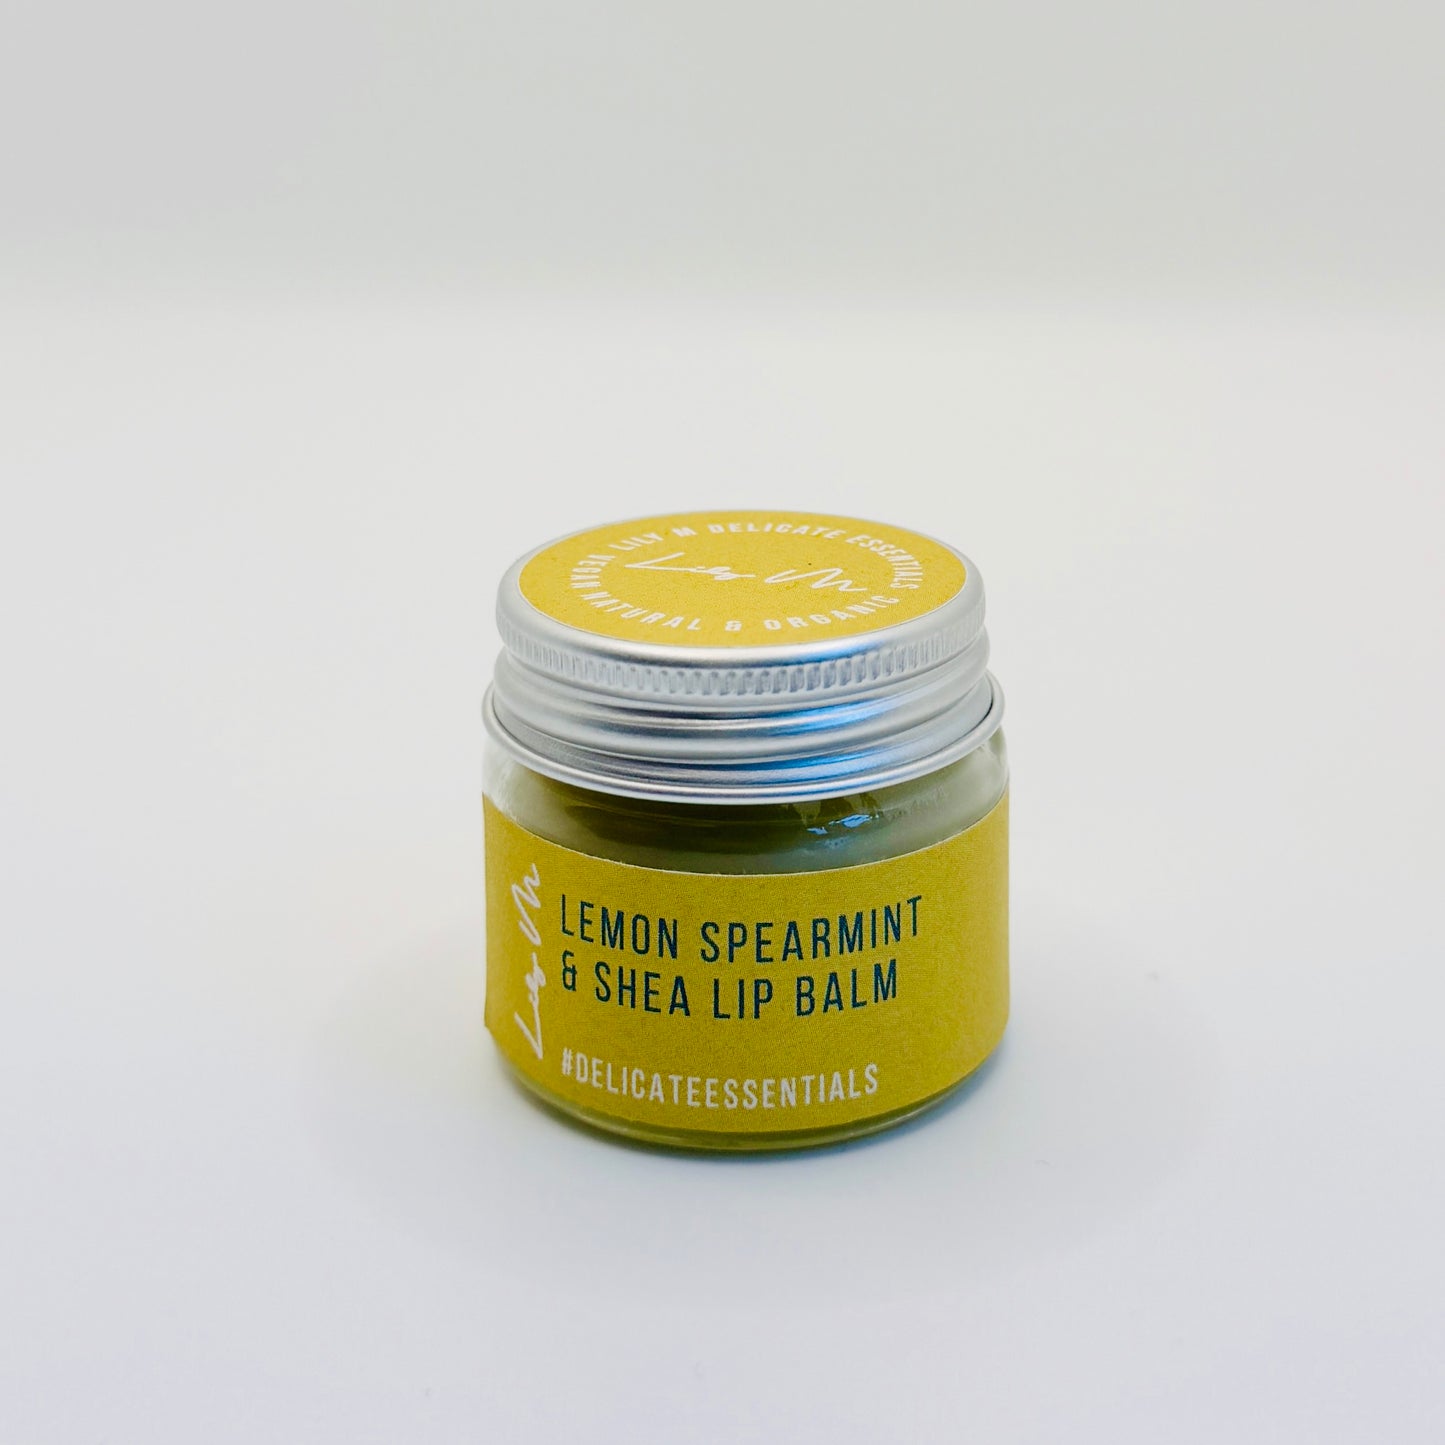 Lemon Spearmint & Shea Lip Balm